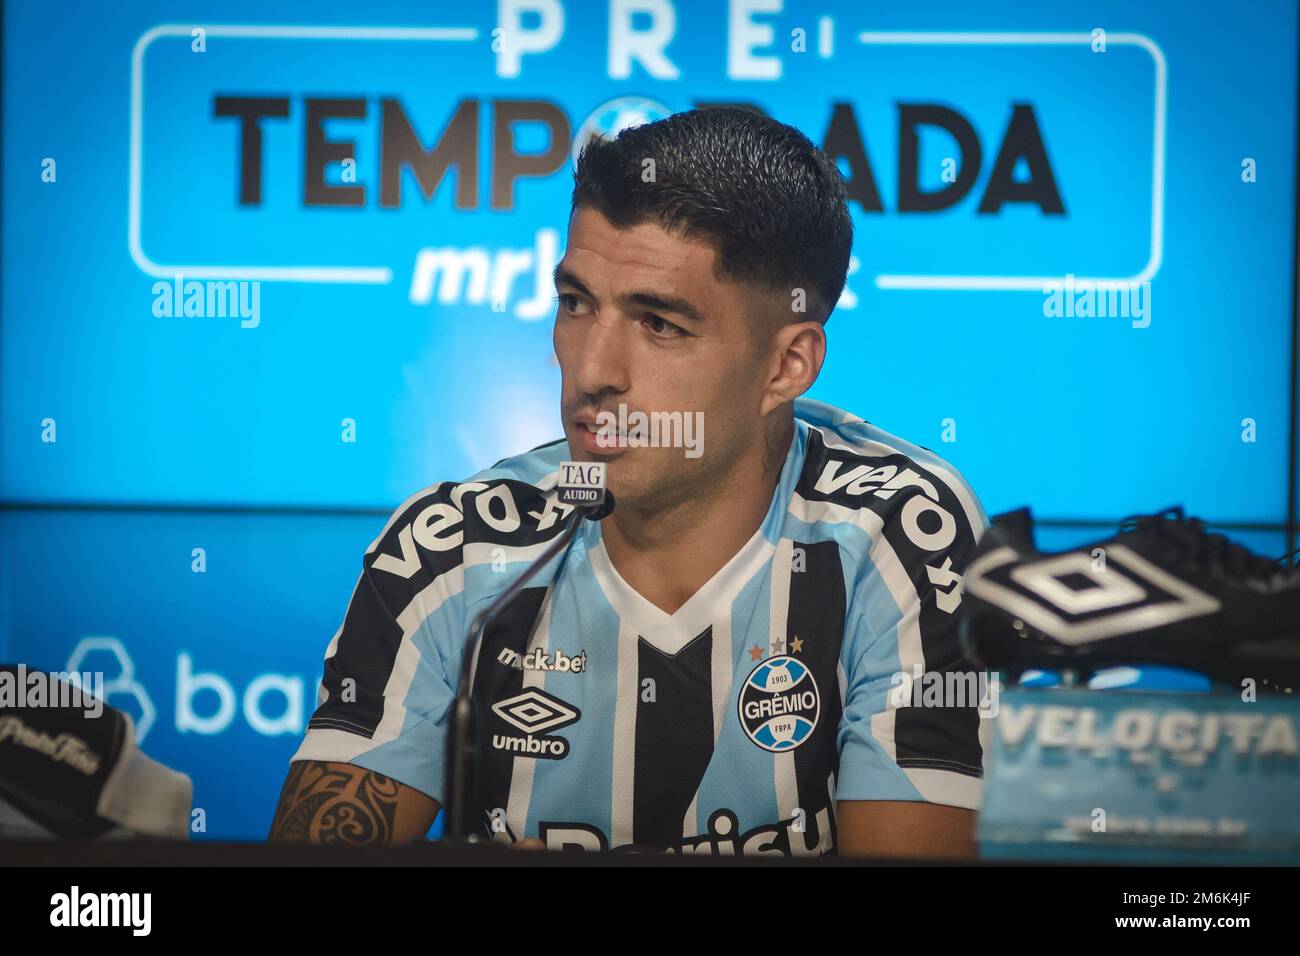 Grêmio Press